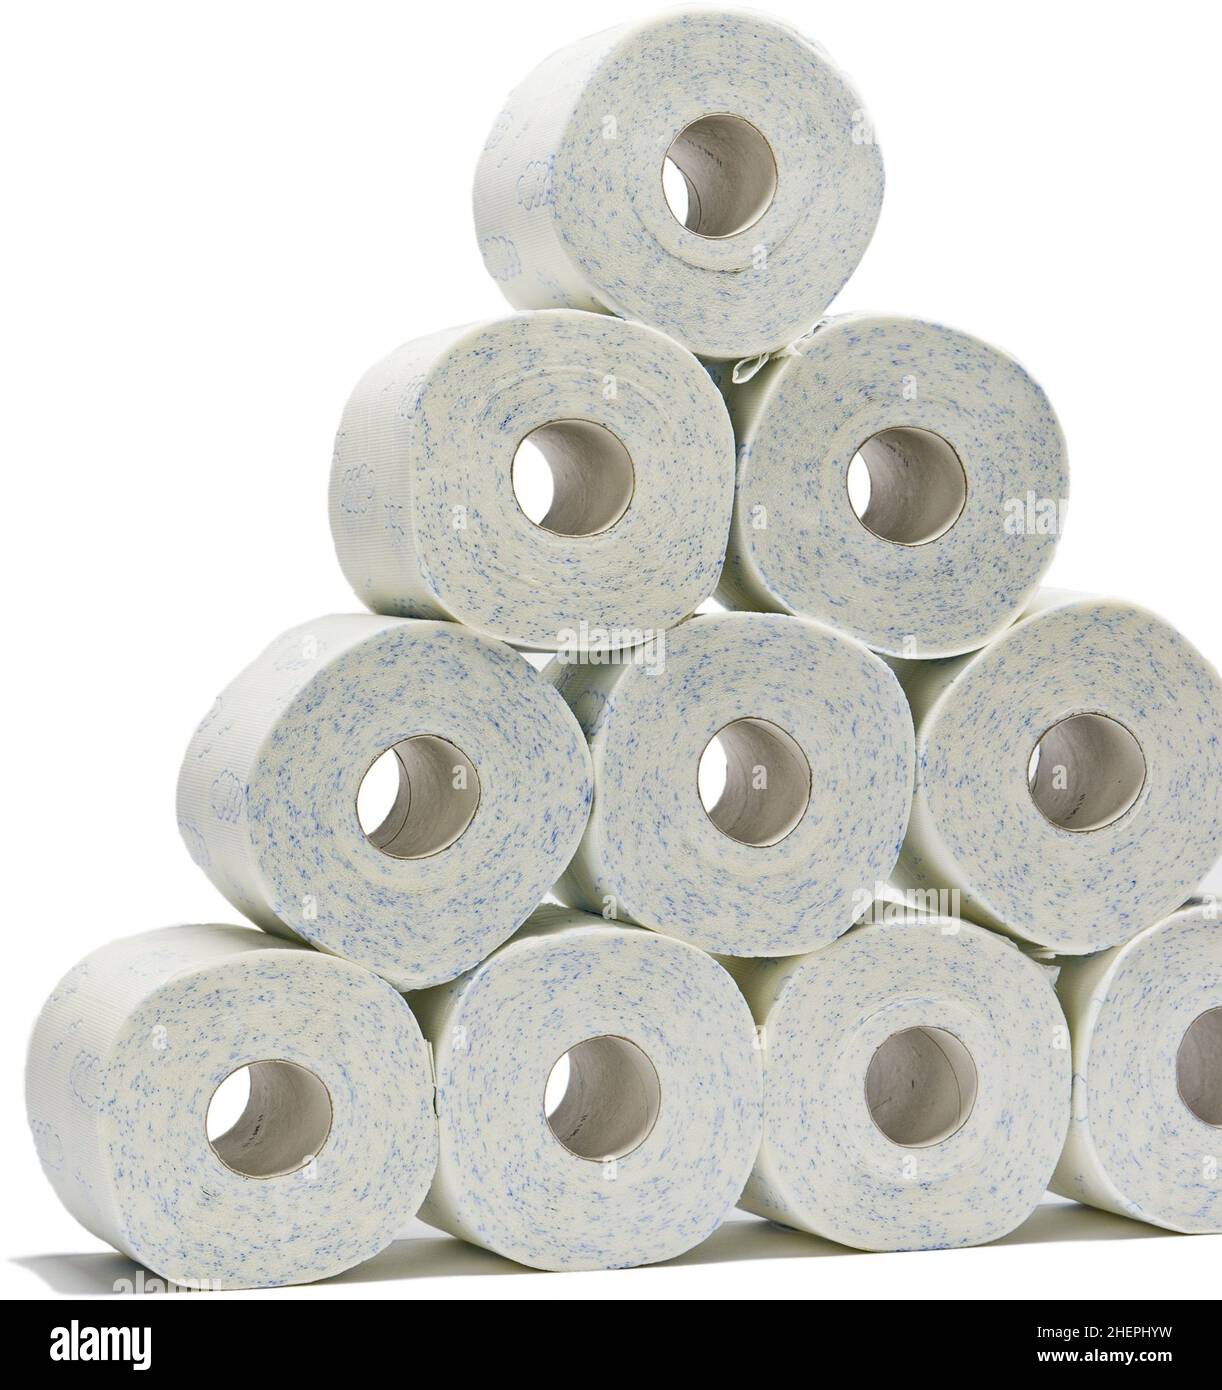 rouleaux de papier toilette empilés comme un triangle Banque D'Images